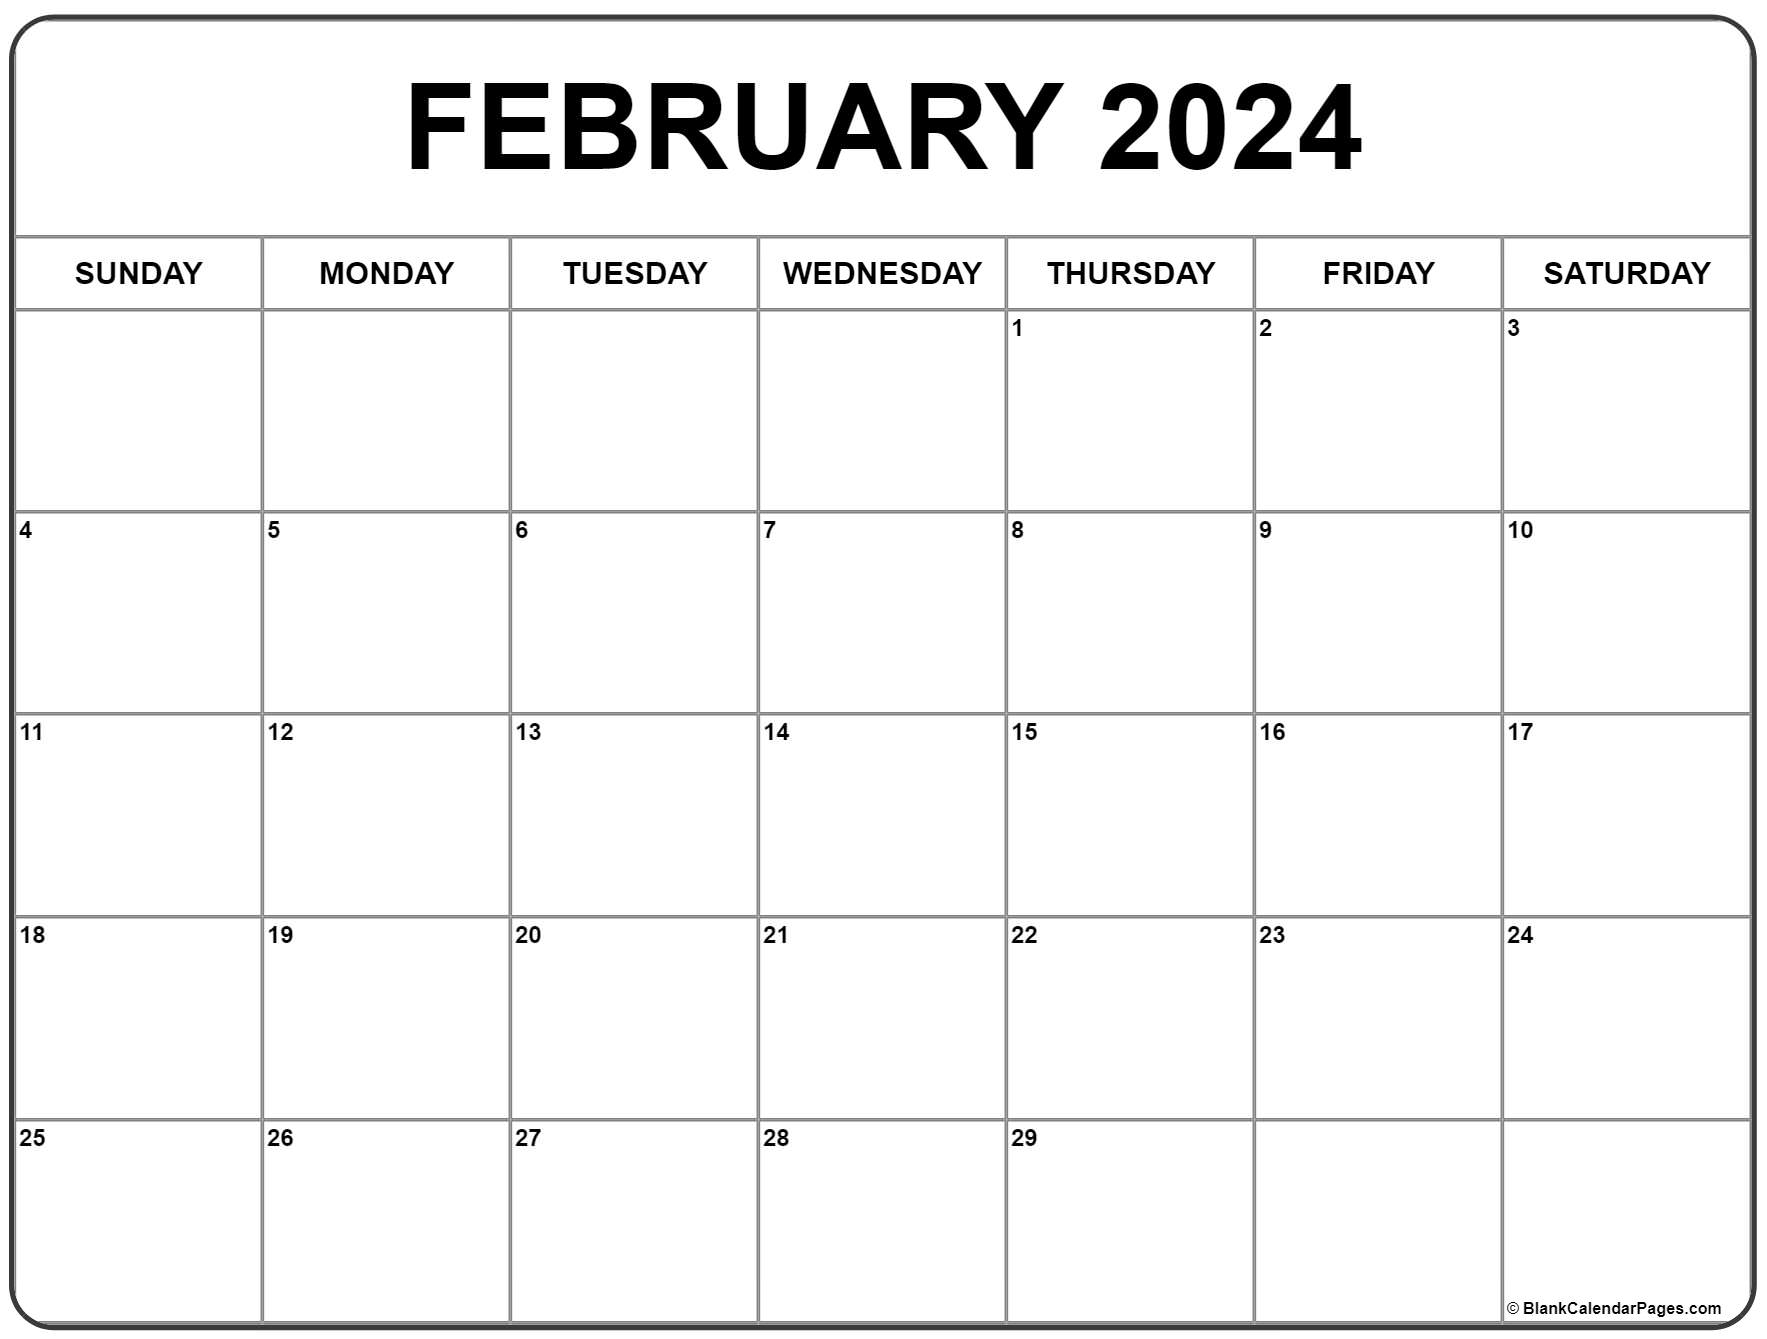 February 2024 Calendar | Free Printable Calendar for Printable Free Calendar February 2024